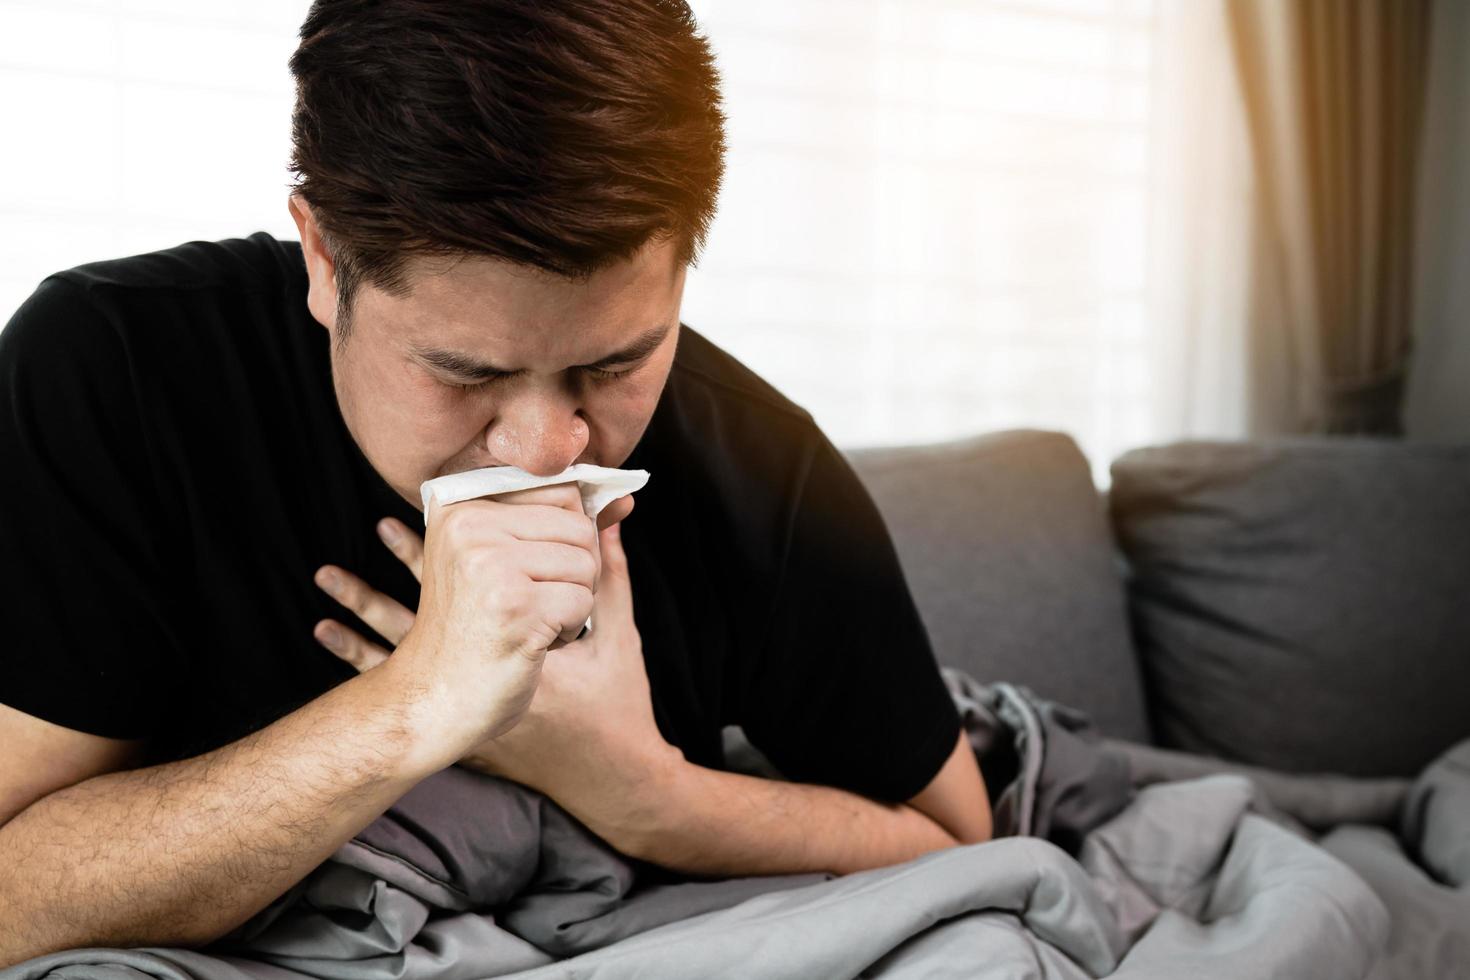 le persone asiatiche sono malate o ammalate di bronchite mentre tossiscono coprendosi la bocca con della carta velina quando si siedono sul divano di casa. foto